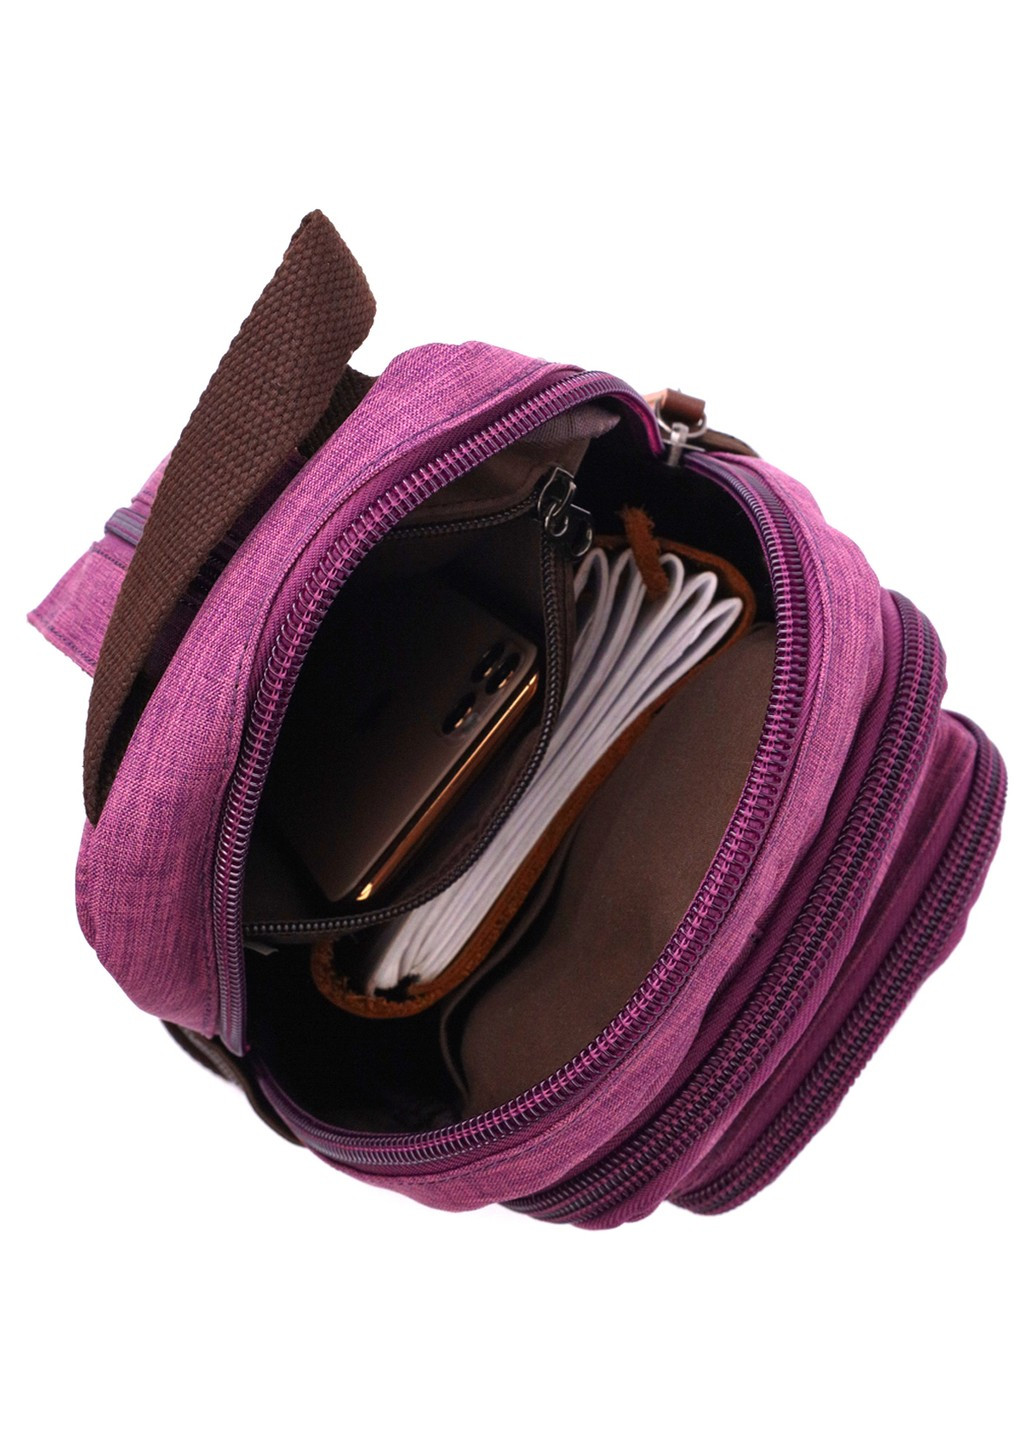 Модний рюкзак з поліестру з великою кількістю кишень 22147 Фіолетовий Vintage (267925338)